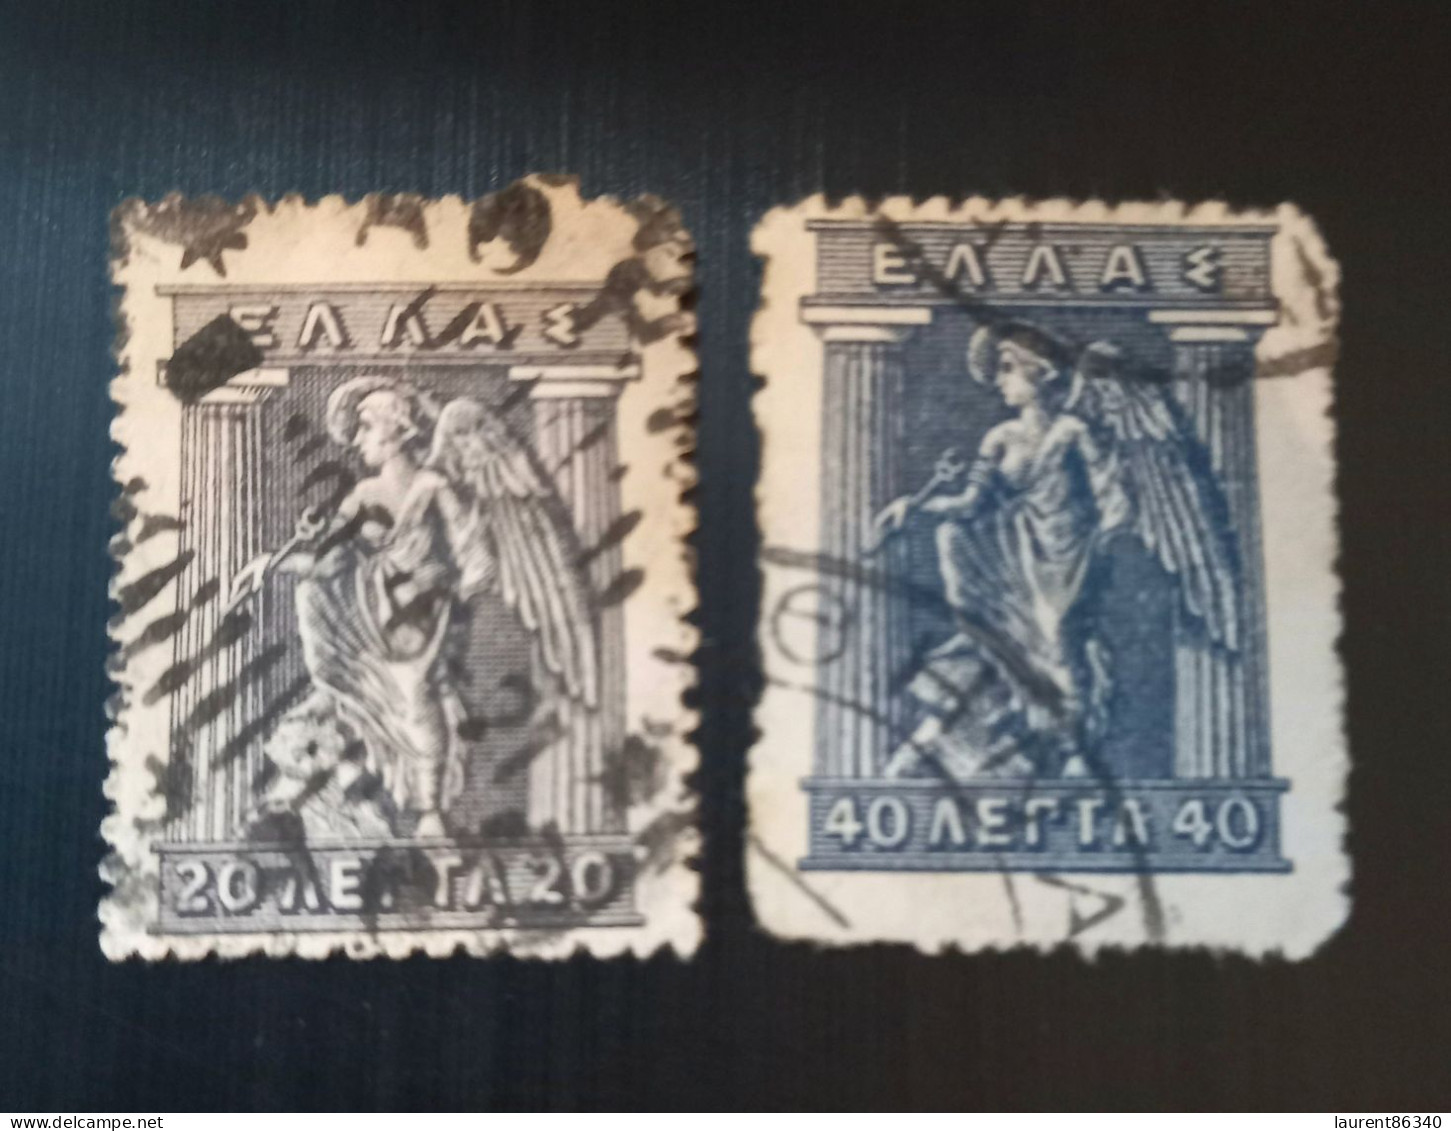 Grèce 1911 -1921 Mythological Figures - Engraved Issue Lot 2 - Usados